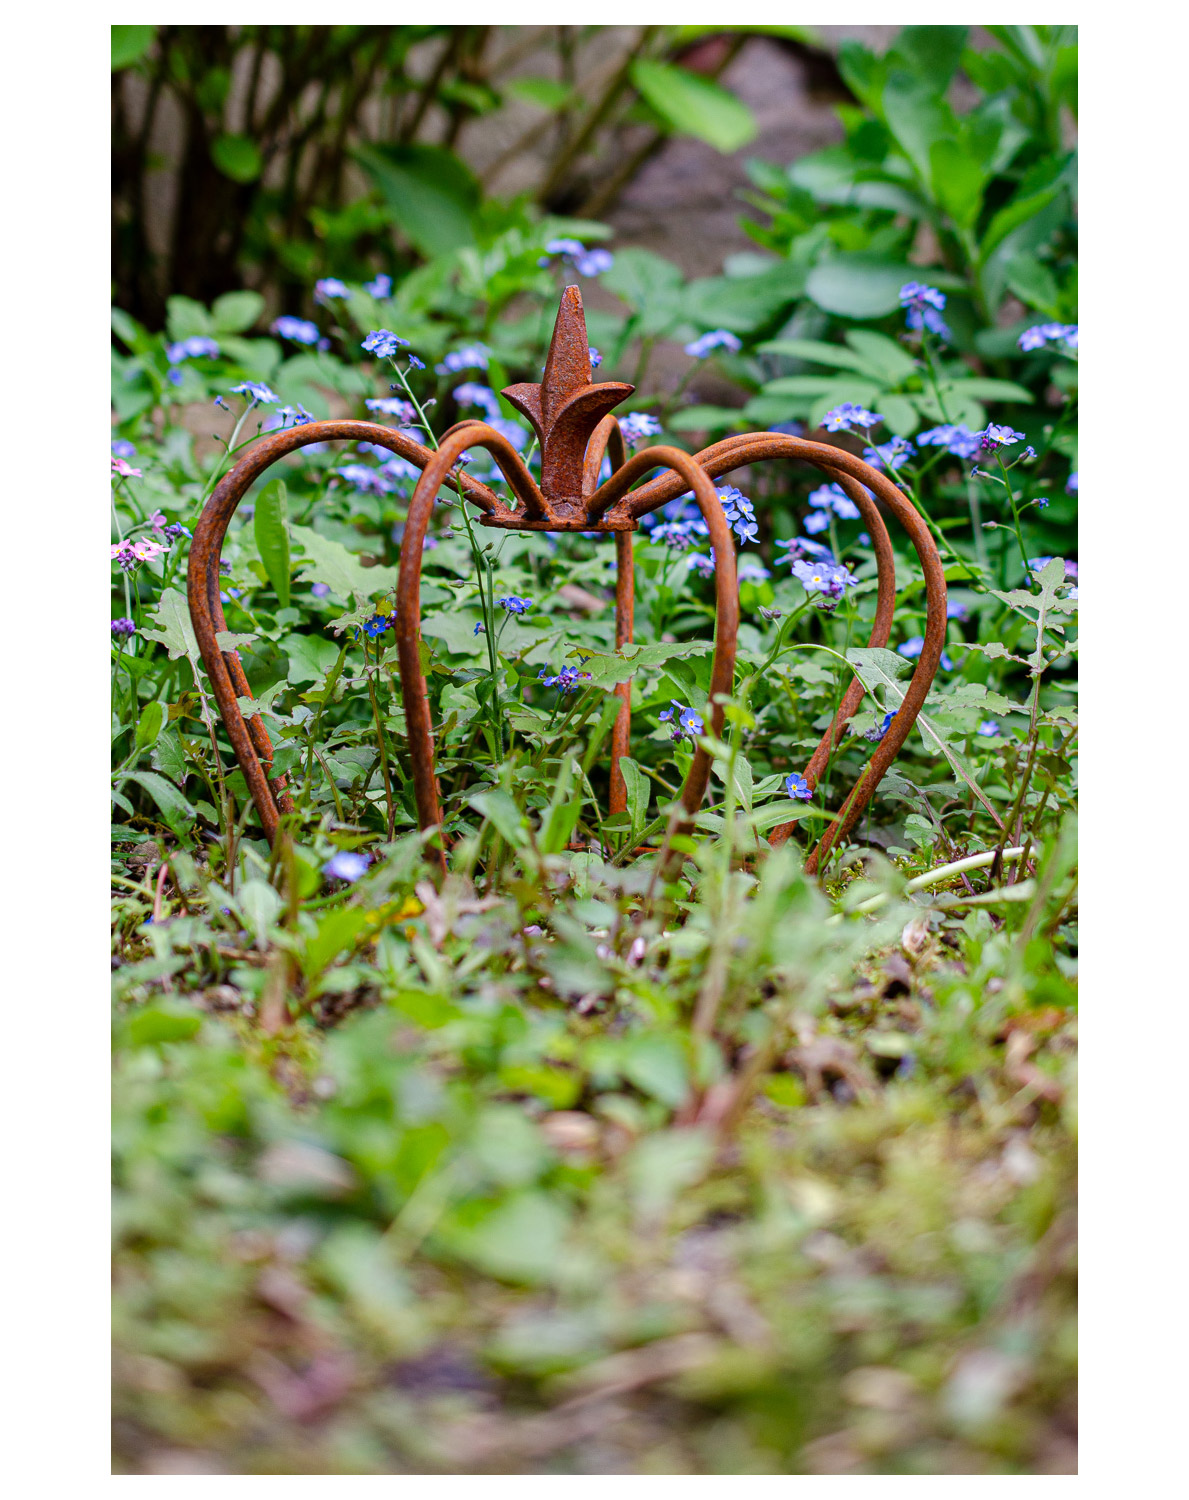 Deko Krone Rost Einzigartig Crown Iron Lily Garden Decoration Rust Antique Style 24cm